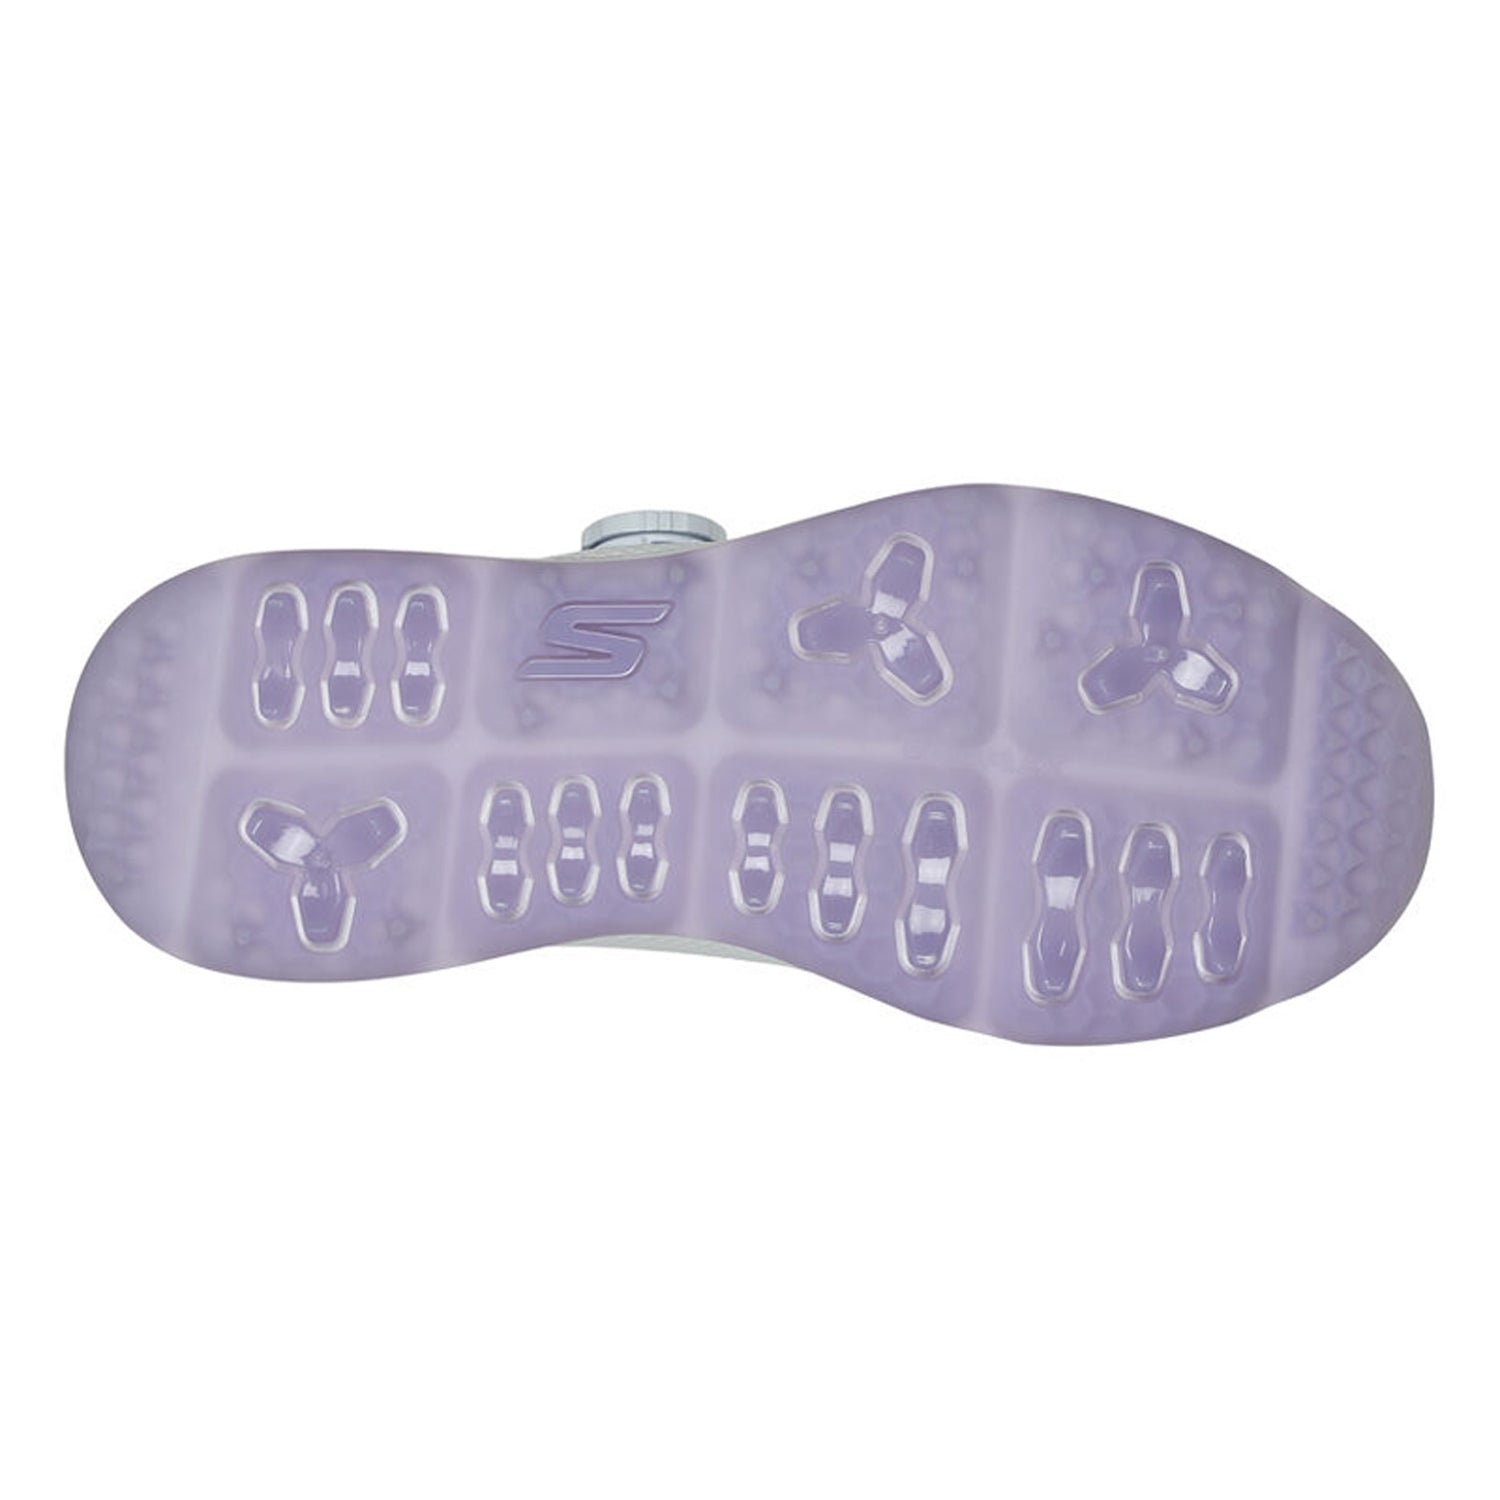 Peltz Shoes  Women's Skechers GOgolf: Elite 5 - Slip 'In Golf Shoe White/Lavender 123062-WLV